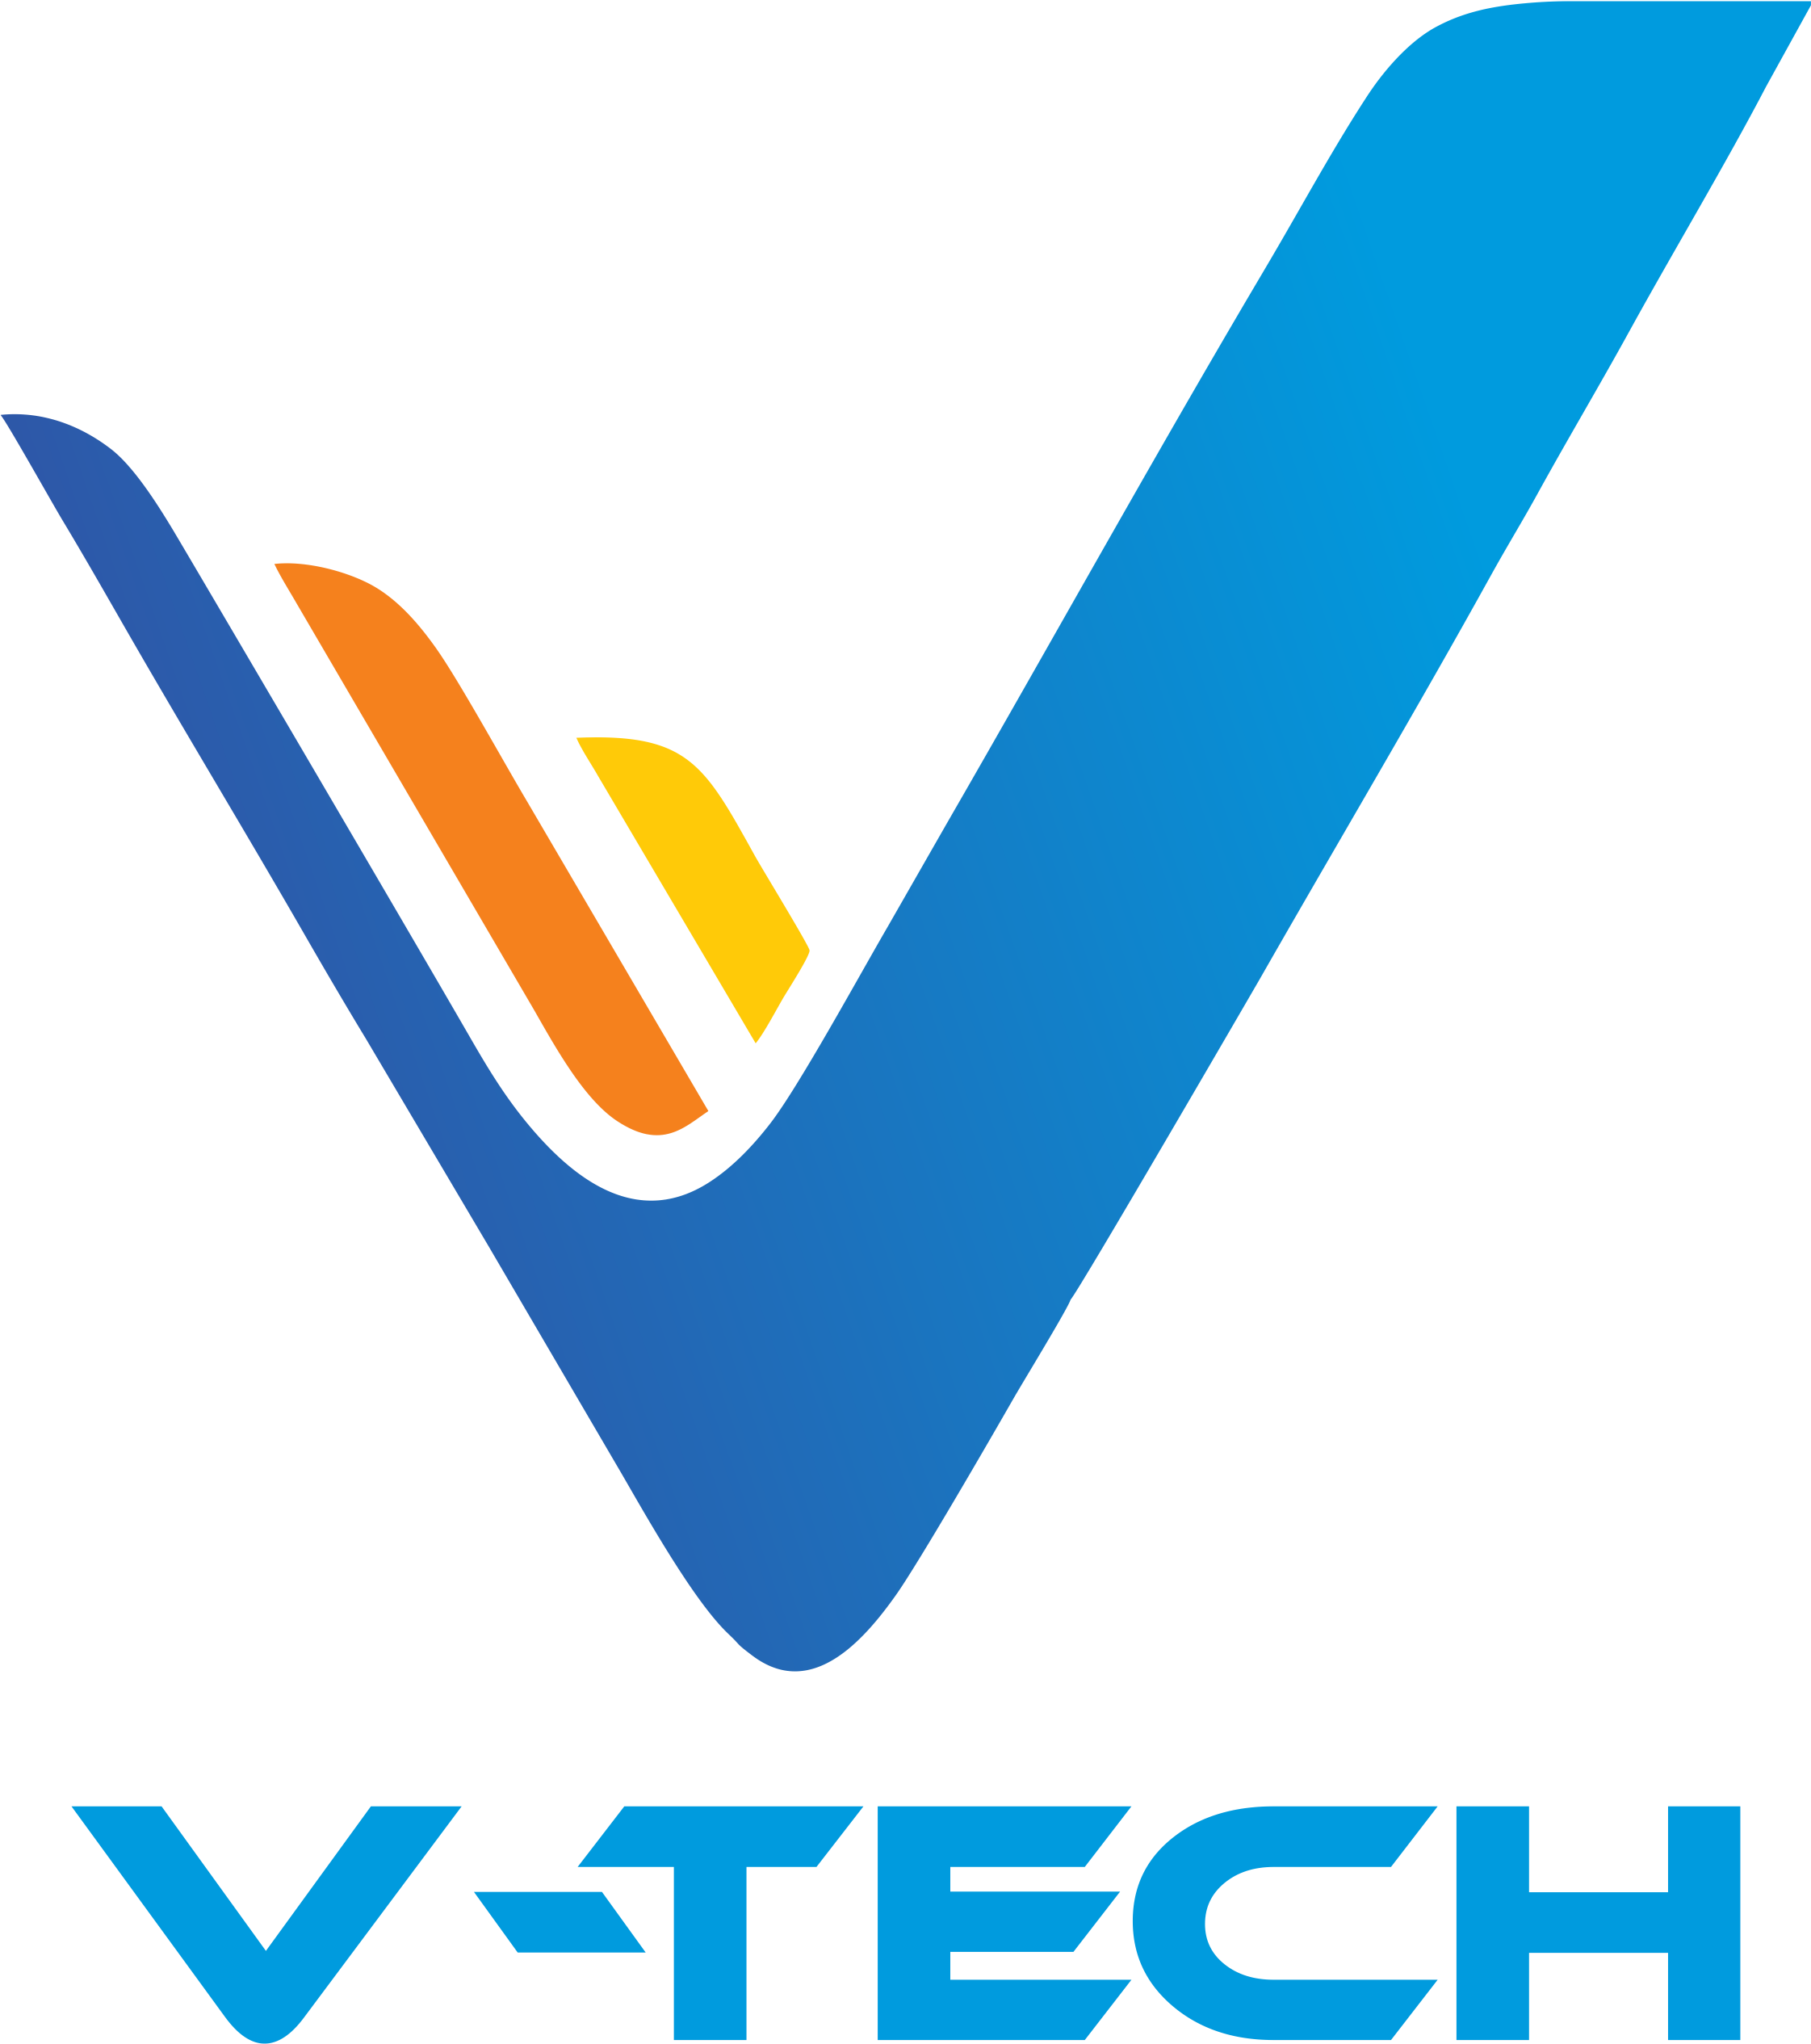 VTECH Bilisim Teknolojileri